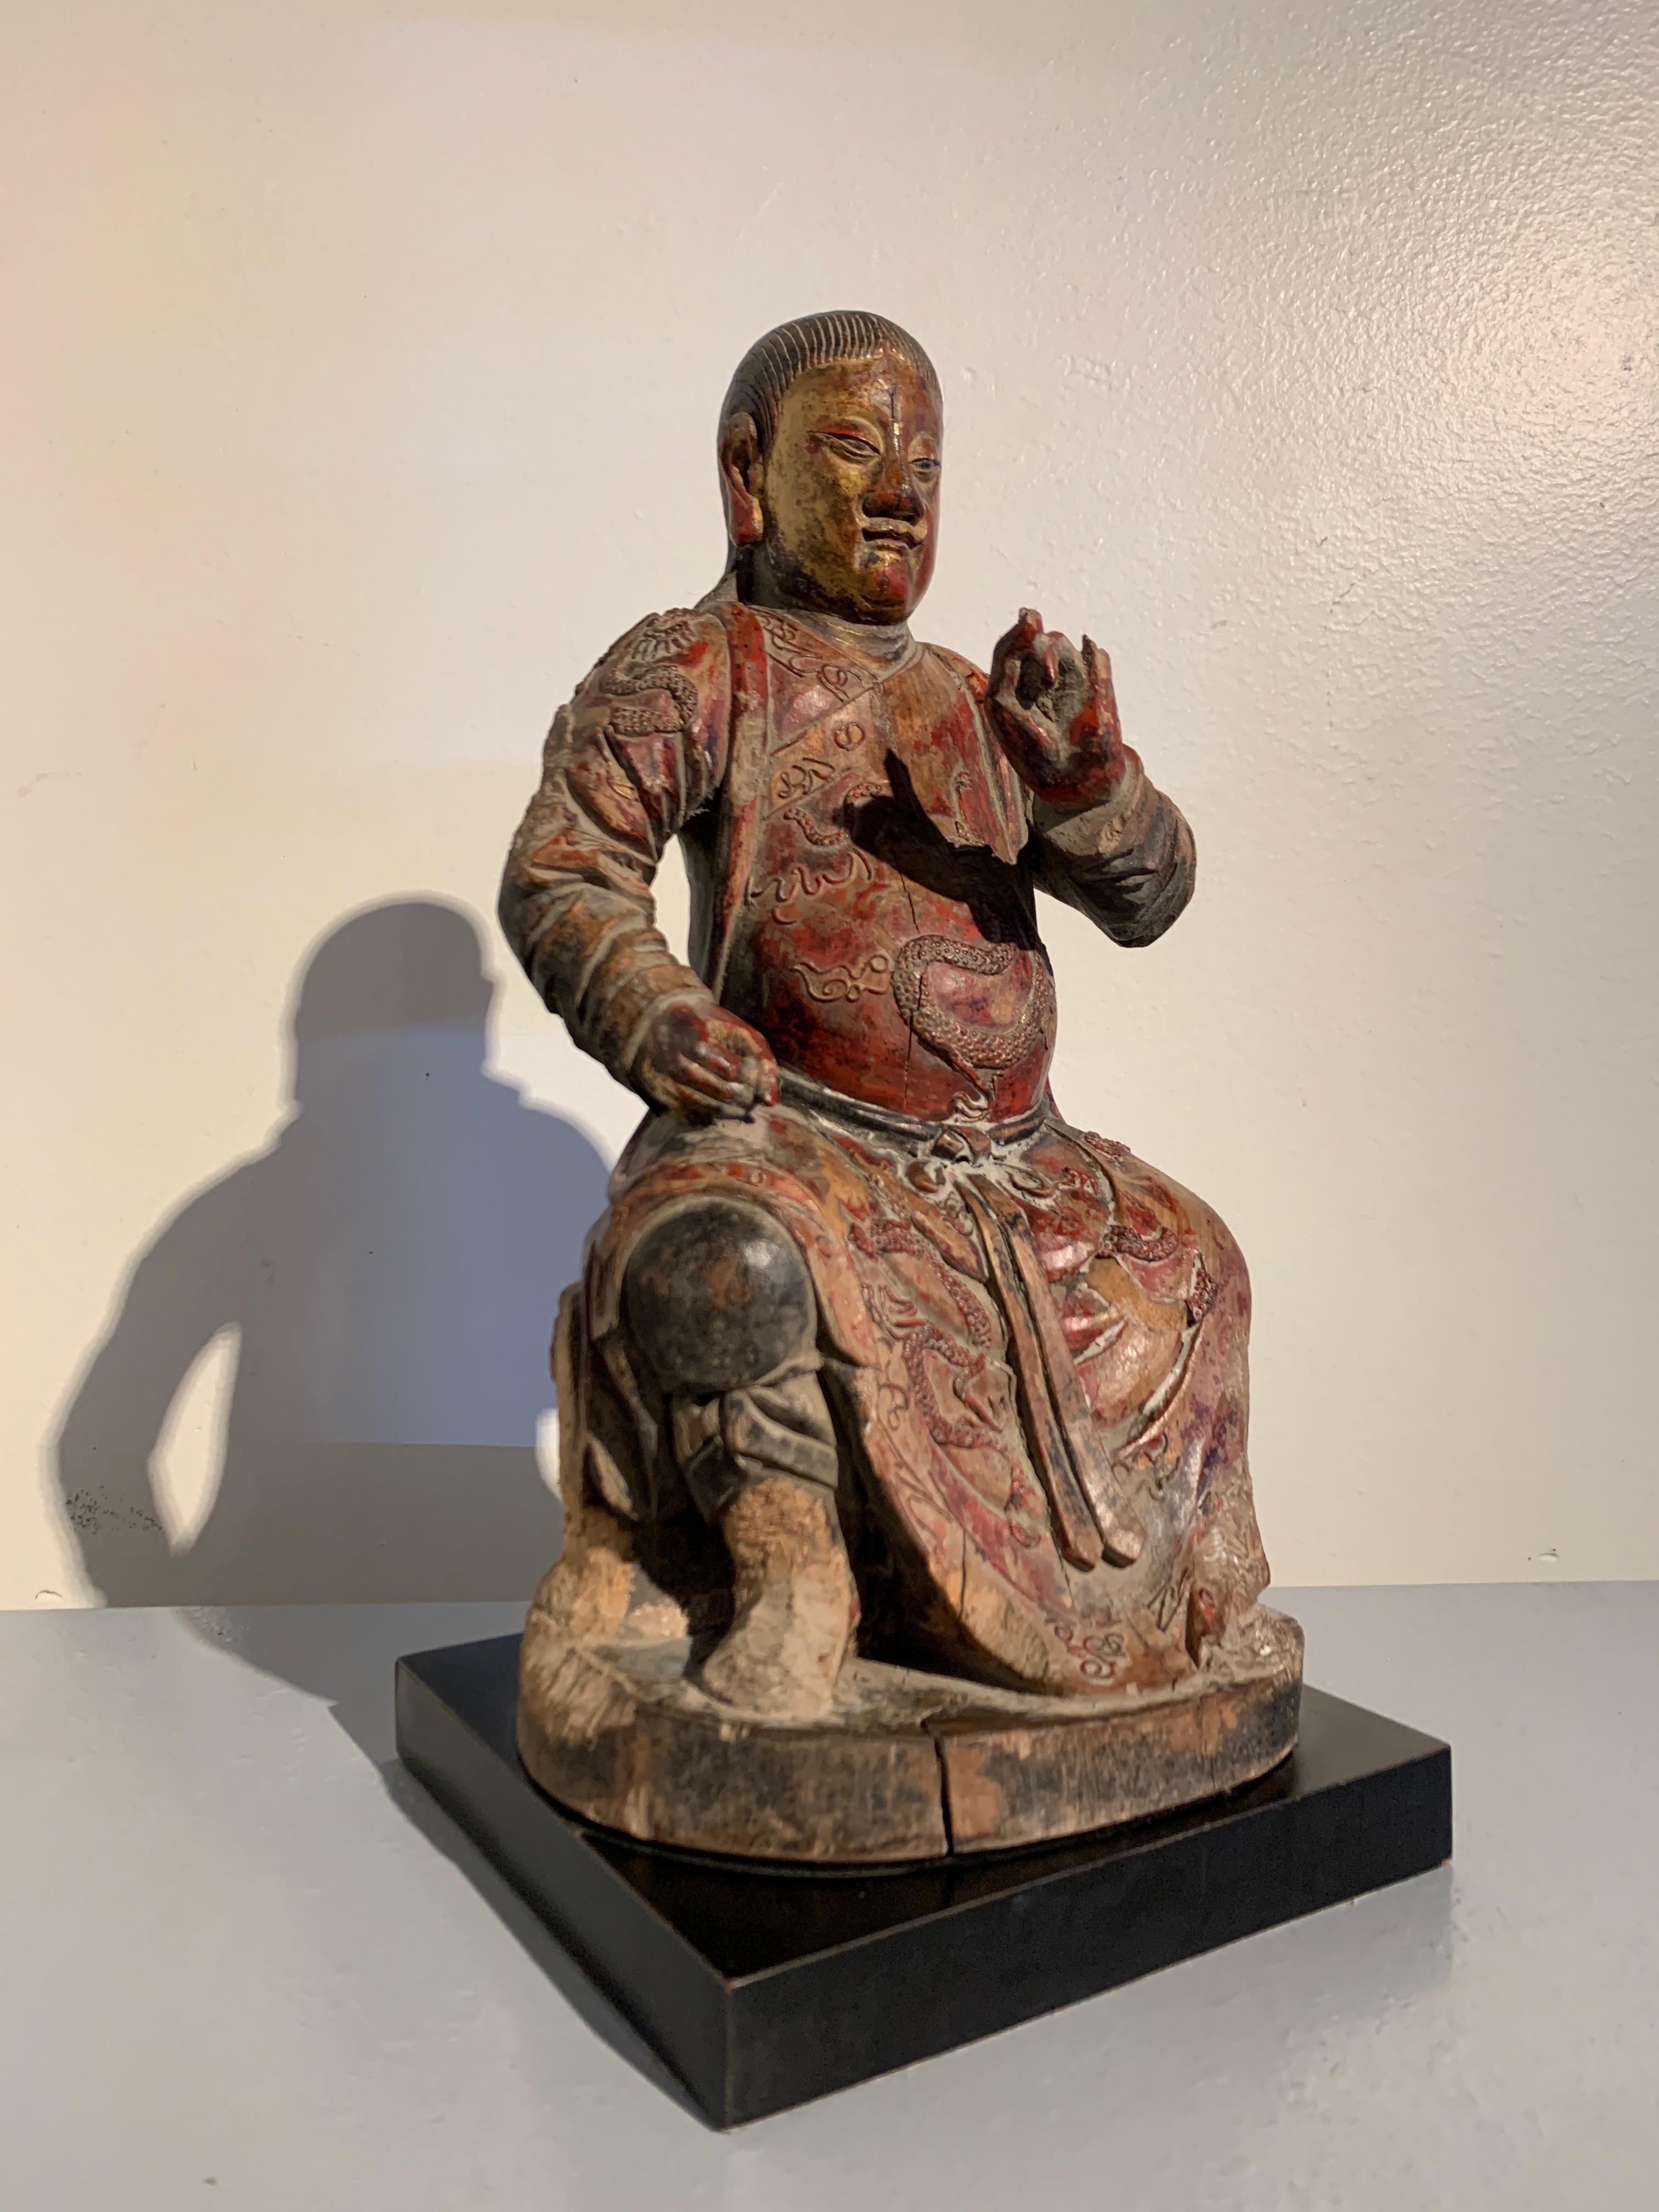 Puissante figure chinoise de la divinité taoïste Zhenwu (Xuanwu), en bois sculpté et laqué avec des détails de laque appliqués, dynastie Qing, XIXe siècle ou avant, Chine.

Zhenwu, également connu sous le nom de Xuanwu, est une divinité taoïste